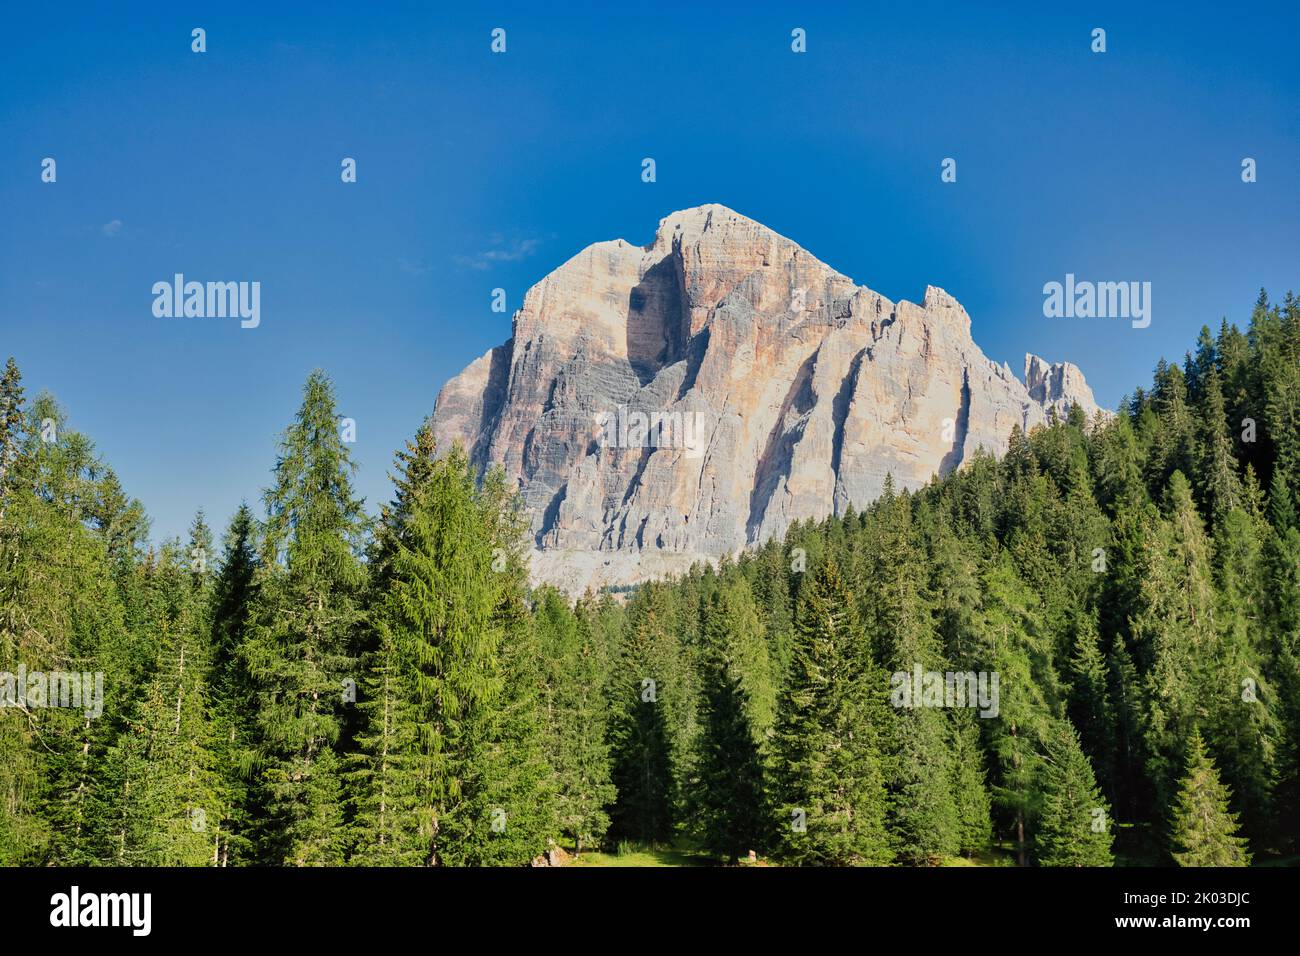 Italy, Veneto, province of Belluno, Cortina d' Ampezzo. Tofana di Rozes, Dolomites Stock Photo